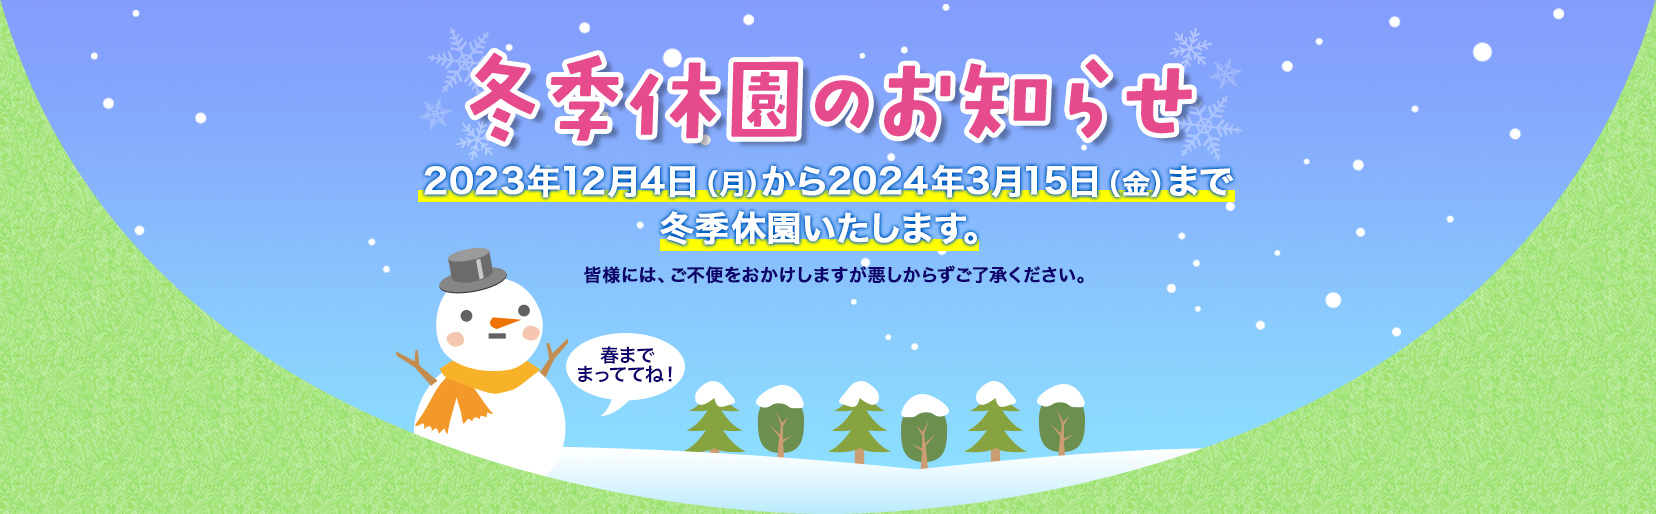 冬期休園のお知らせ 2023年12月4日(月)から2024年3月中旬まで冬季休園いたします。